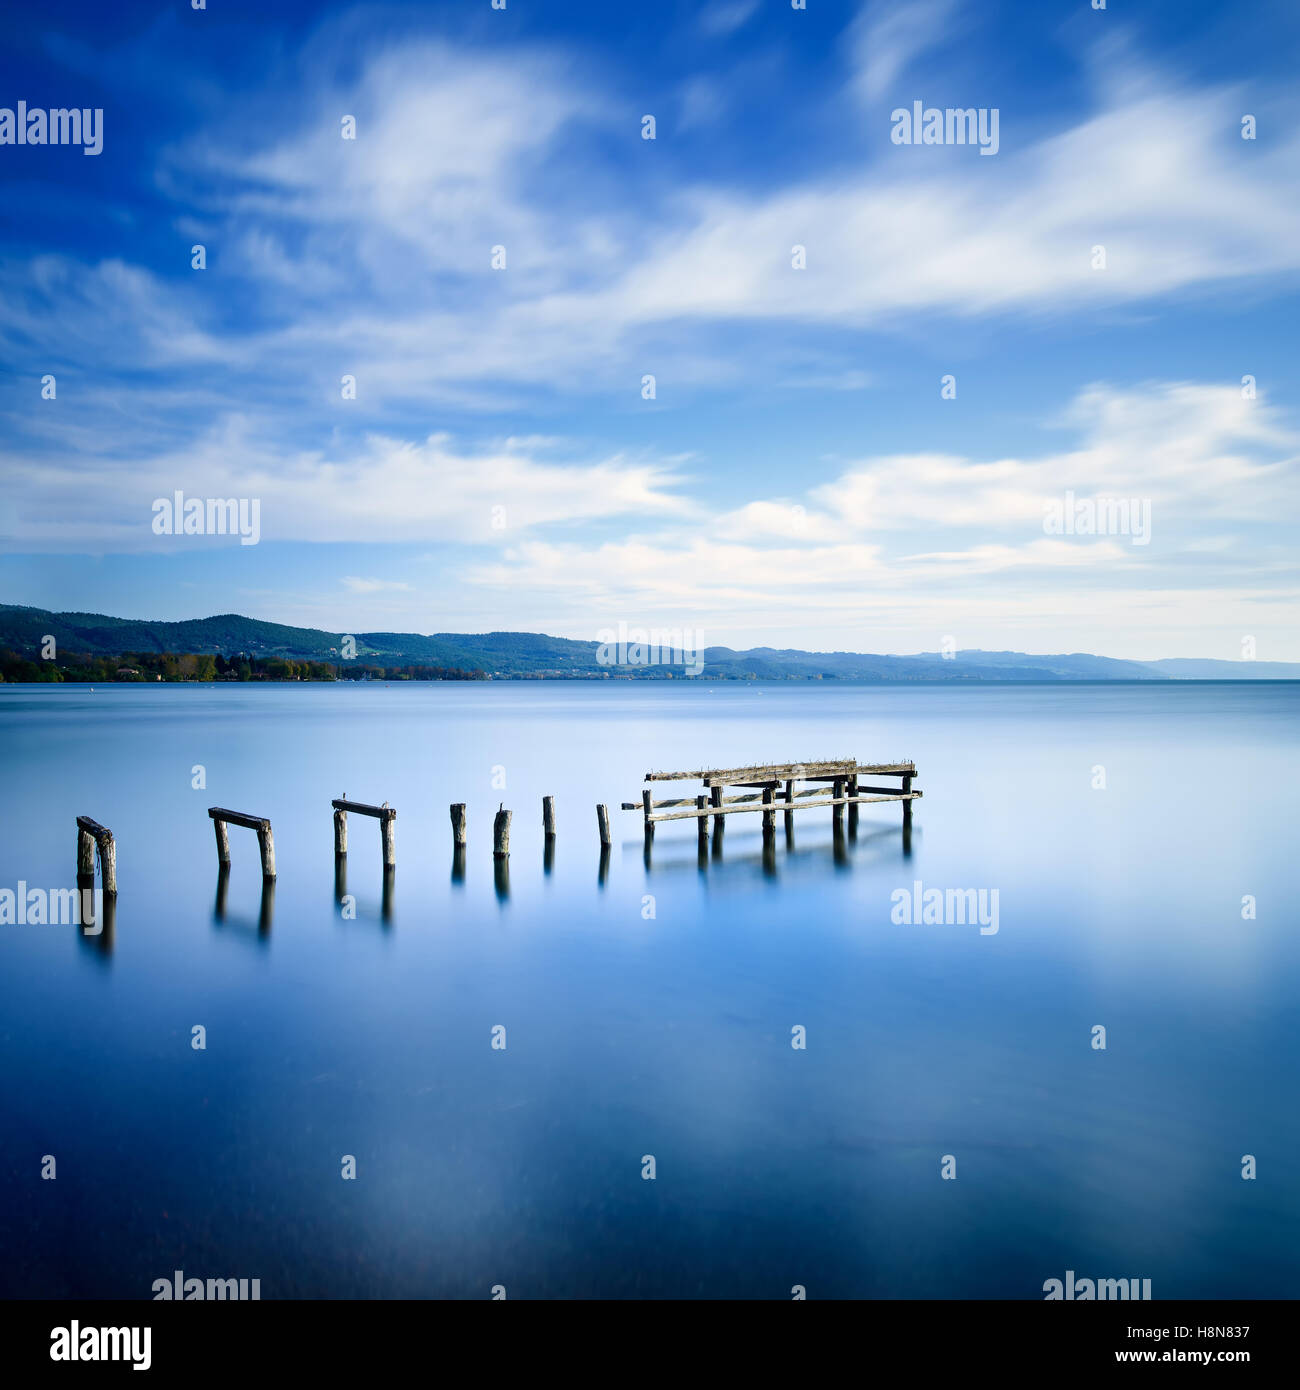 Il molo di legno o molo rimane su un lago blu del tramonto. Fotografie con lunghi tempi di esposizione Foto Stock